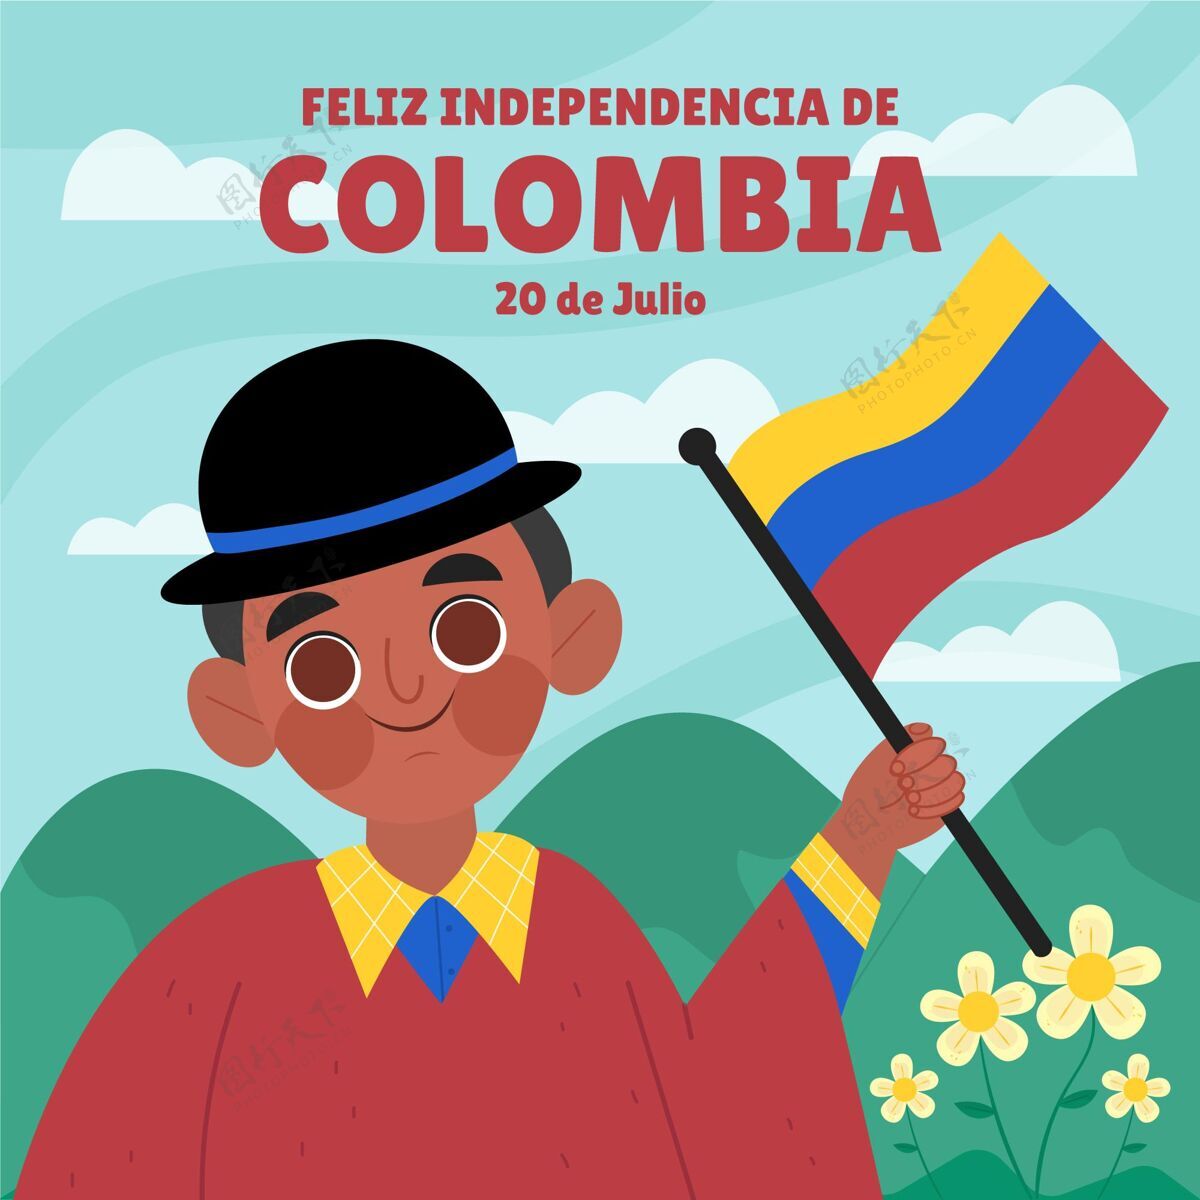 卡通卡通片20德胡里奥-哥伦比亚独立插画独立事件纪念